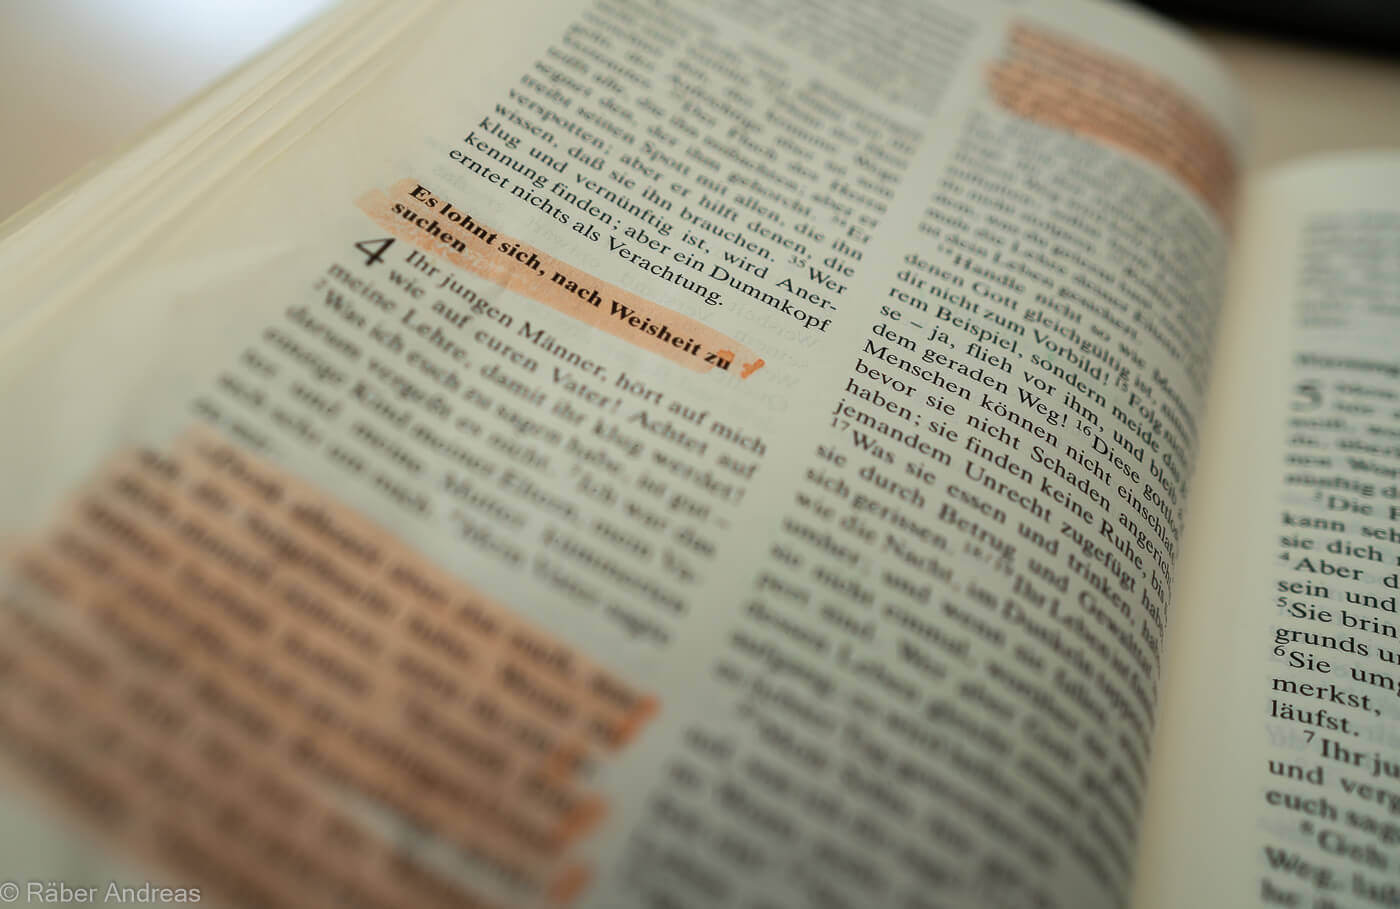 Die Bibel entdecken, lesen, studieren und verstehen